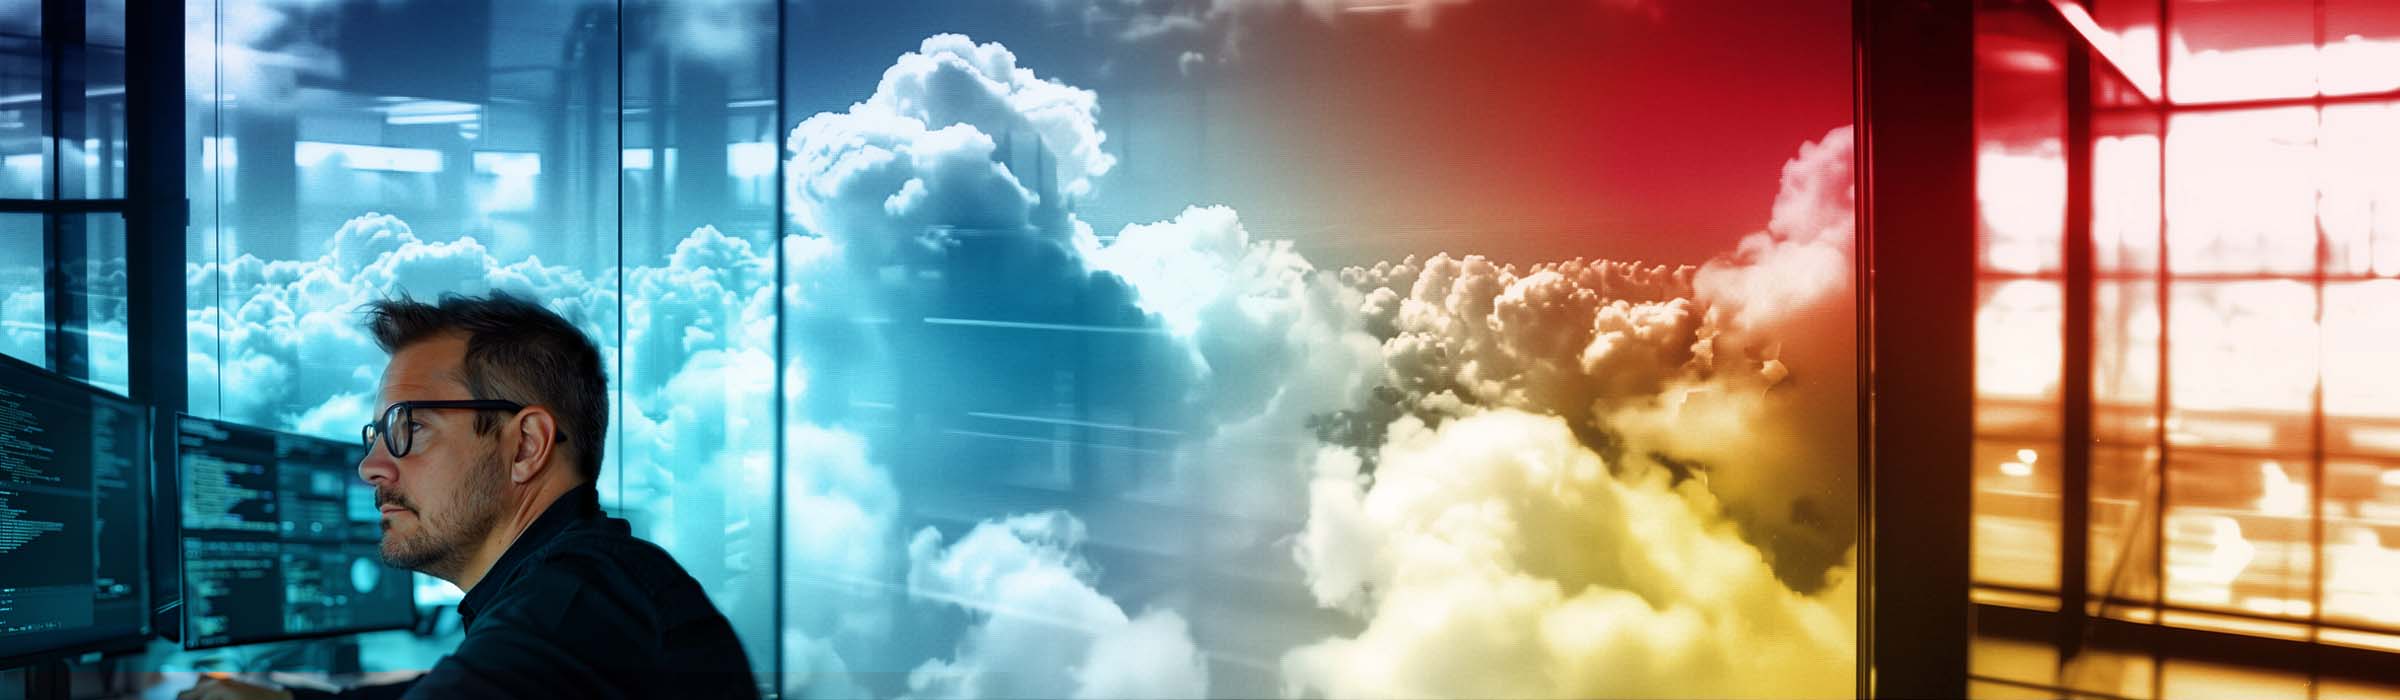 Informes y visibilidad entre nubes